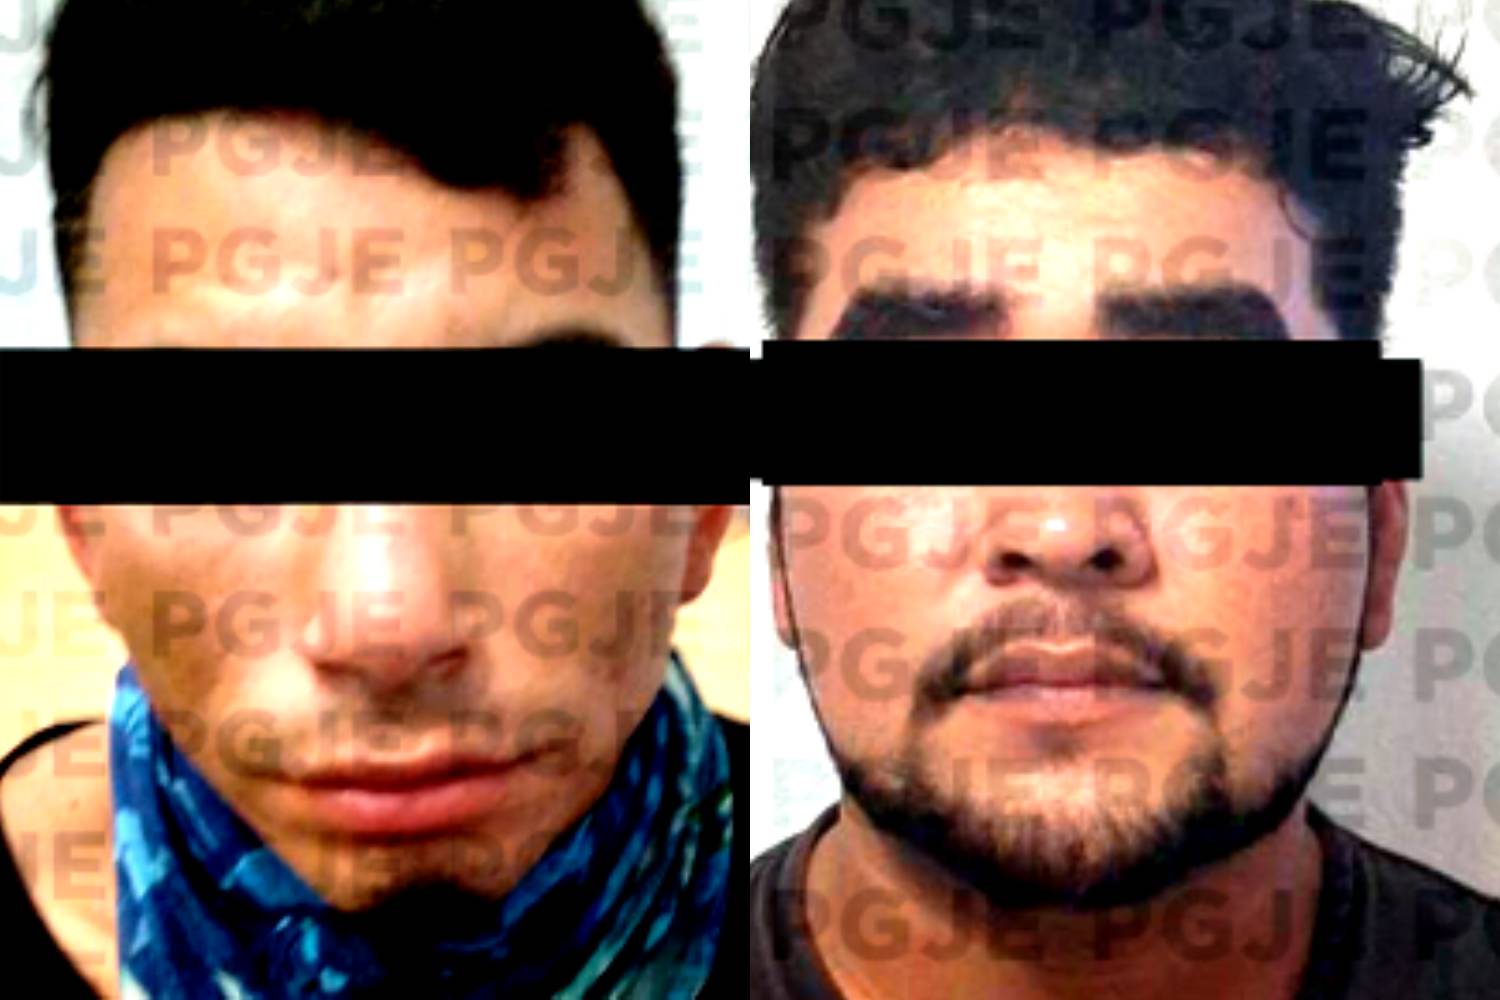 Por robar iPhones y AirPods, 2 hombres irán a prisión por 4 años en Baja California Sur